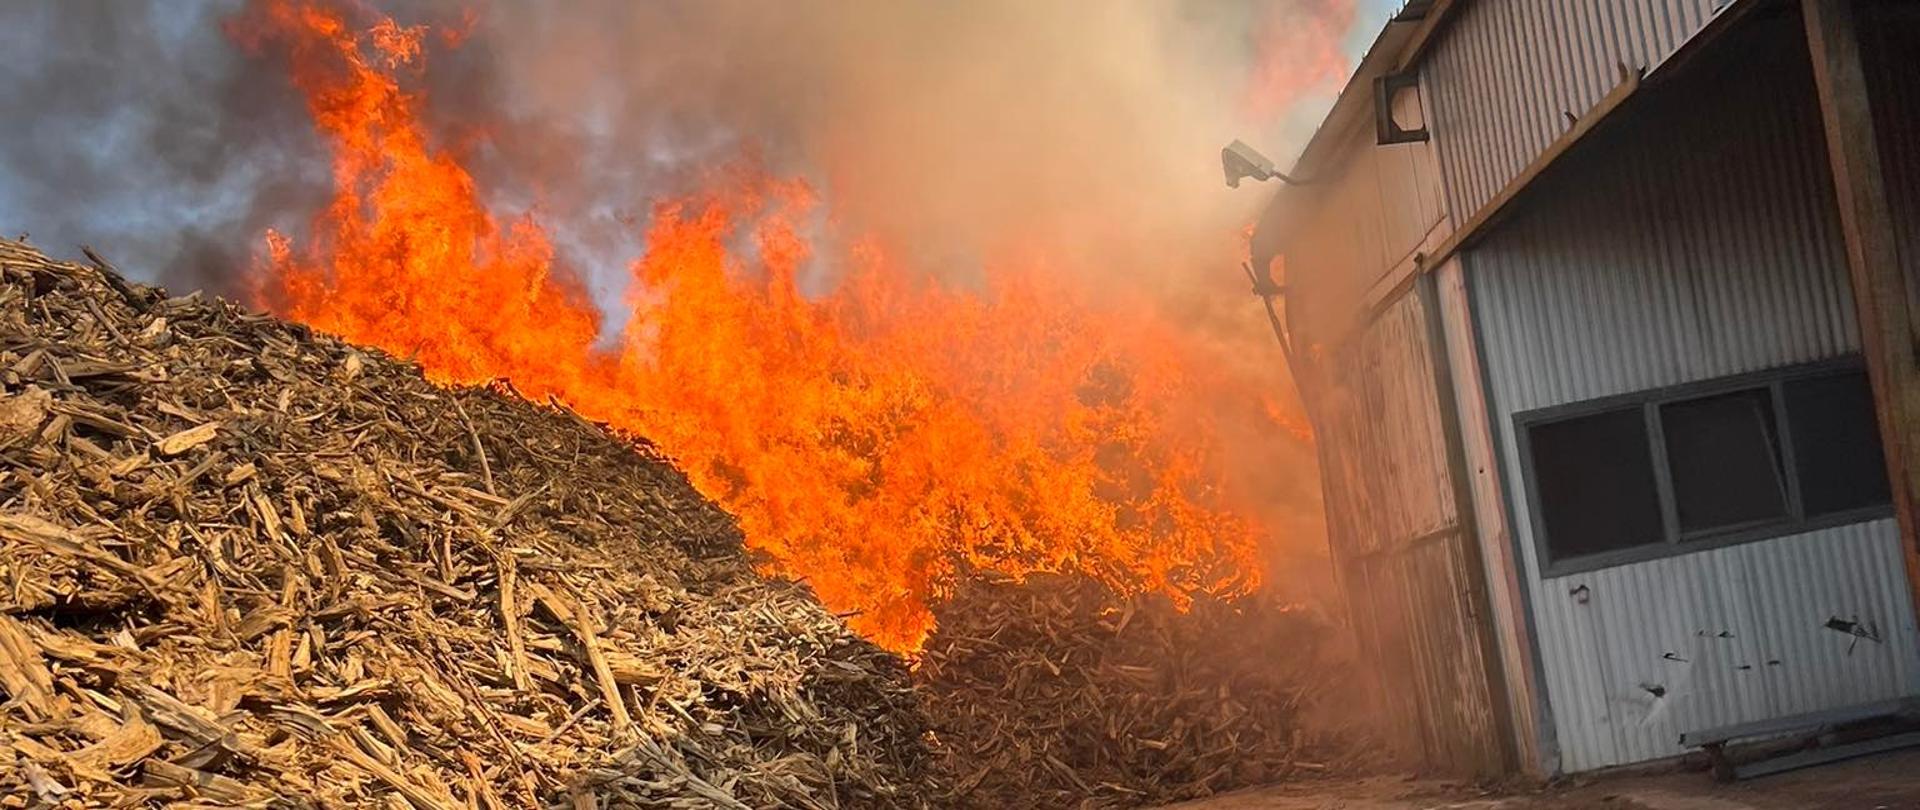 Zdjęcie przedstawia pryzmę biomasy, która się pali. Na zdjęciu widać również płomienie oraz budynek produkcyjny. 